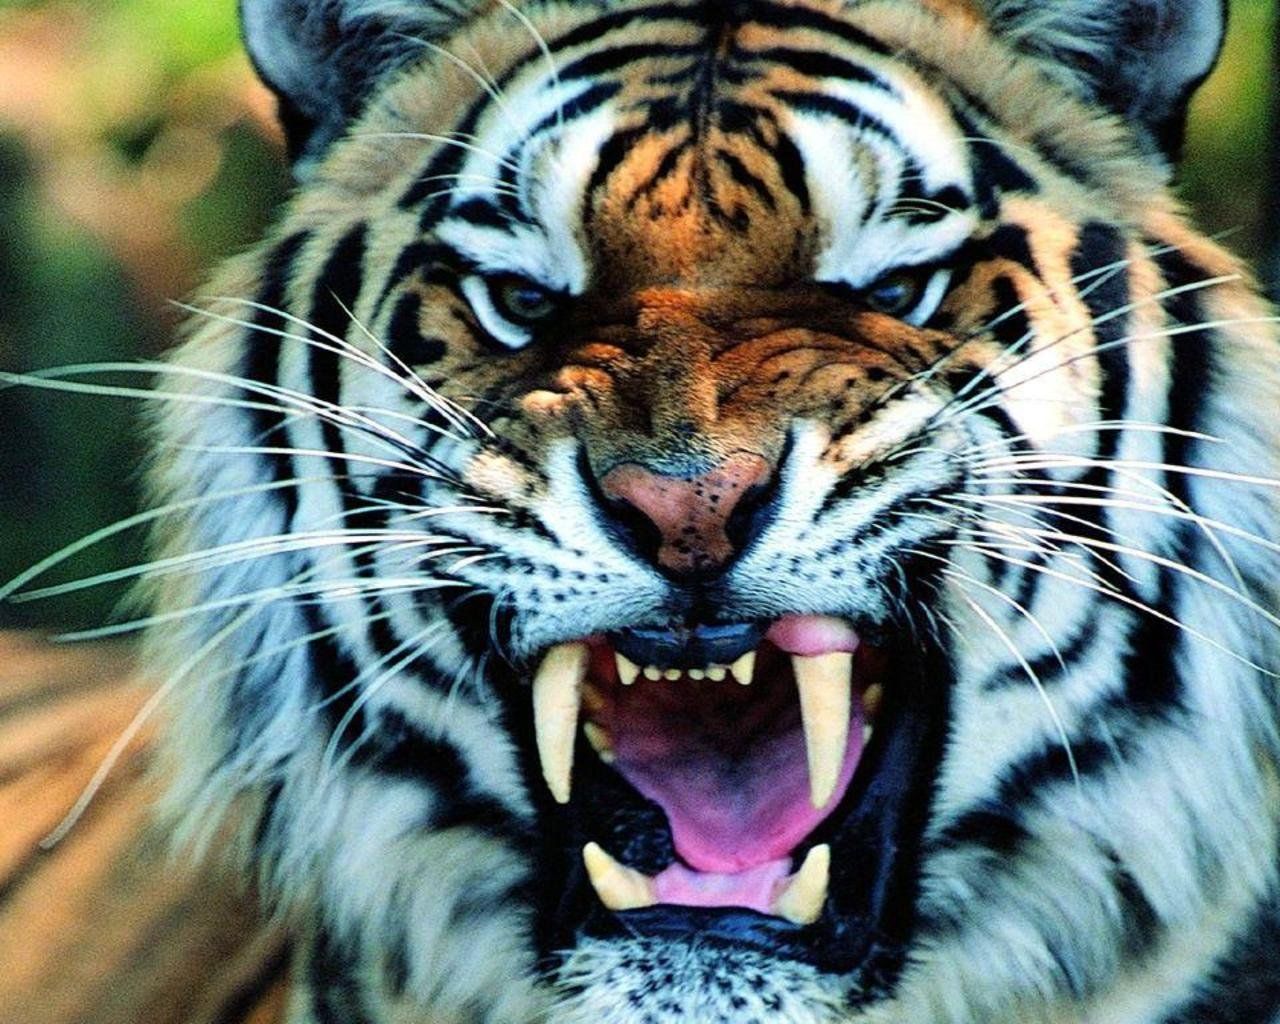 Cats Big Cats. Tiger wallpaper, Pet tiger, Tiger image